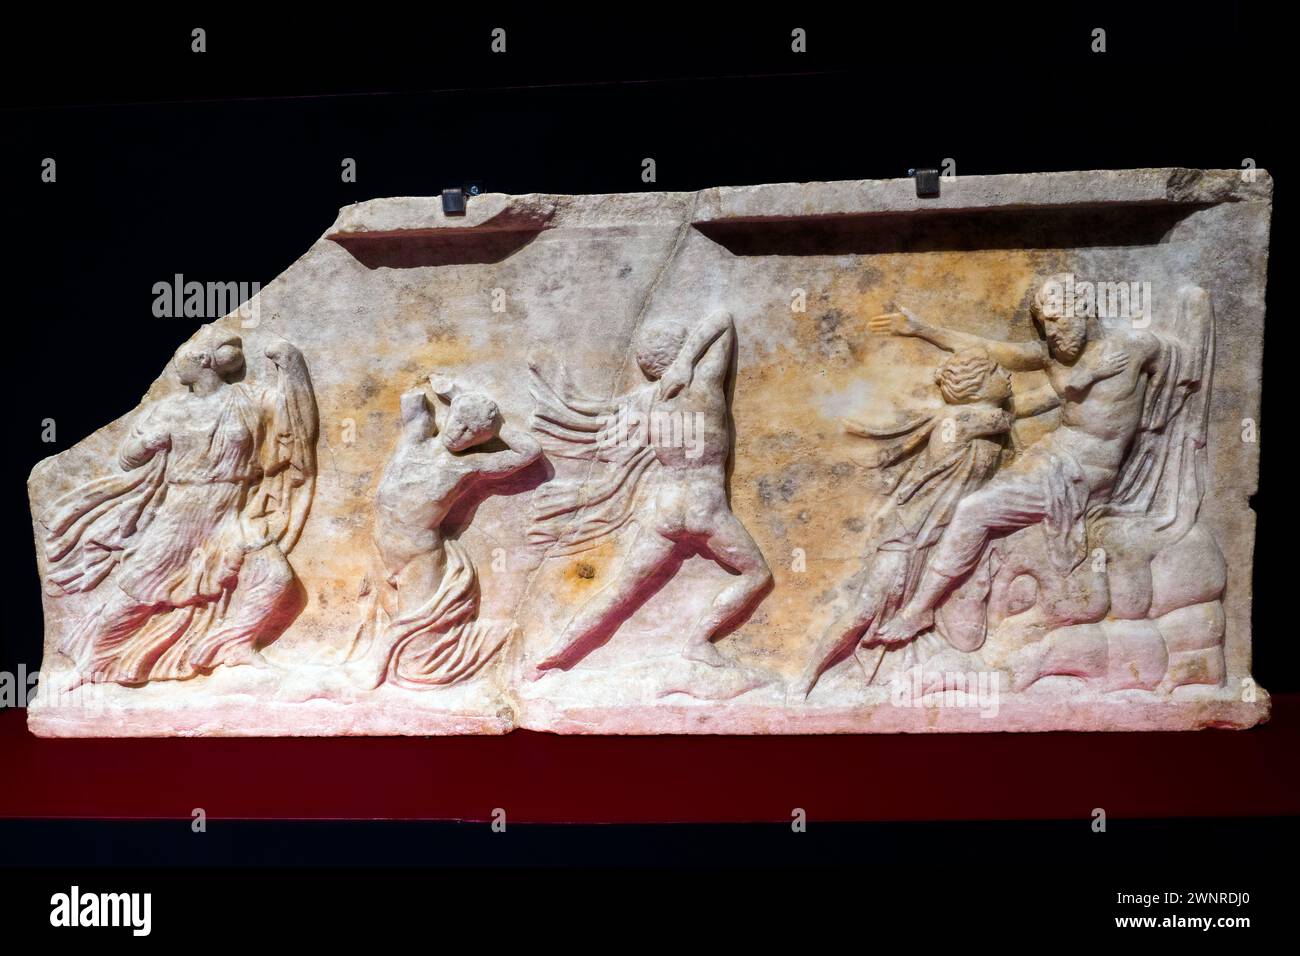 Soulagement avec le massacre des Niobides de Modène, via Crespellani - marbre pentélique, IIe siècle après JC - Museo Civico Archeologico Etnologico, Modène, Italie Banque D'Images